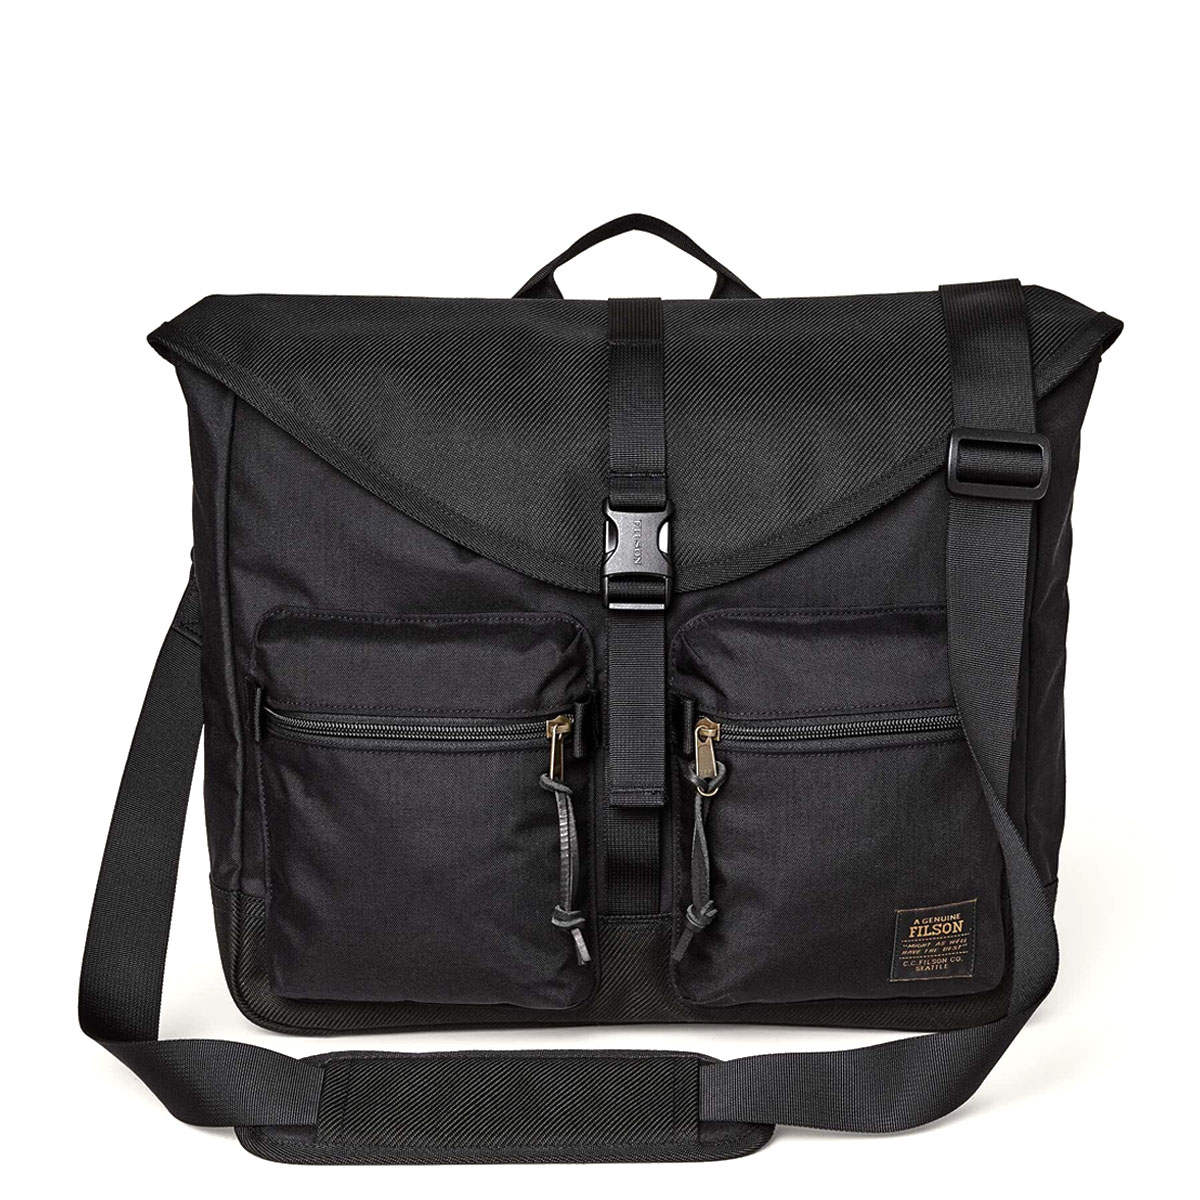 Filson Surveyor Messenger Bag Black, strapazierfähige und vielseitige Umhängetasche, die auch starker Beanspruchung standhält